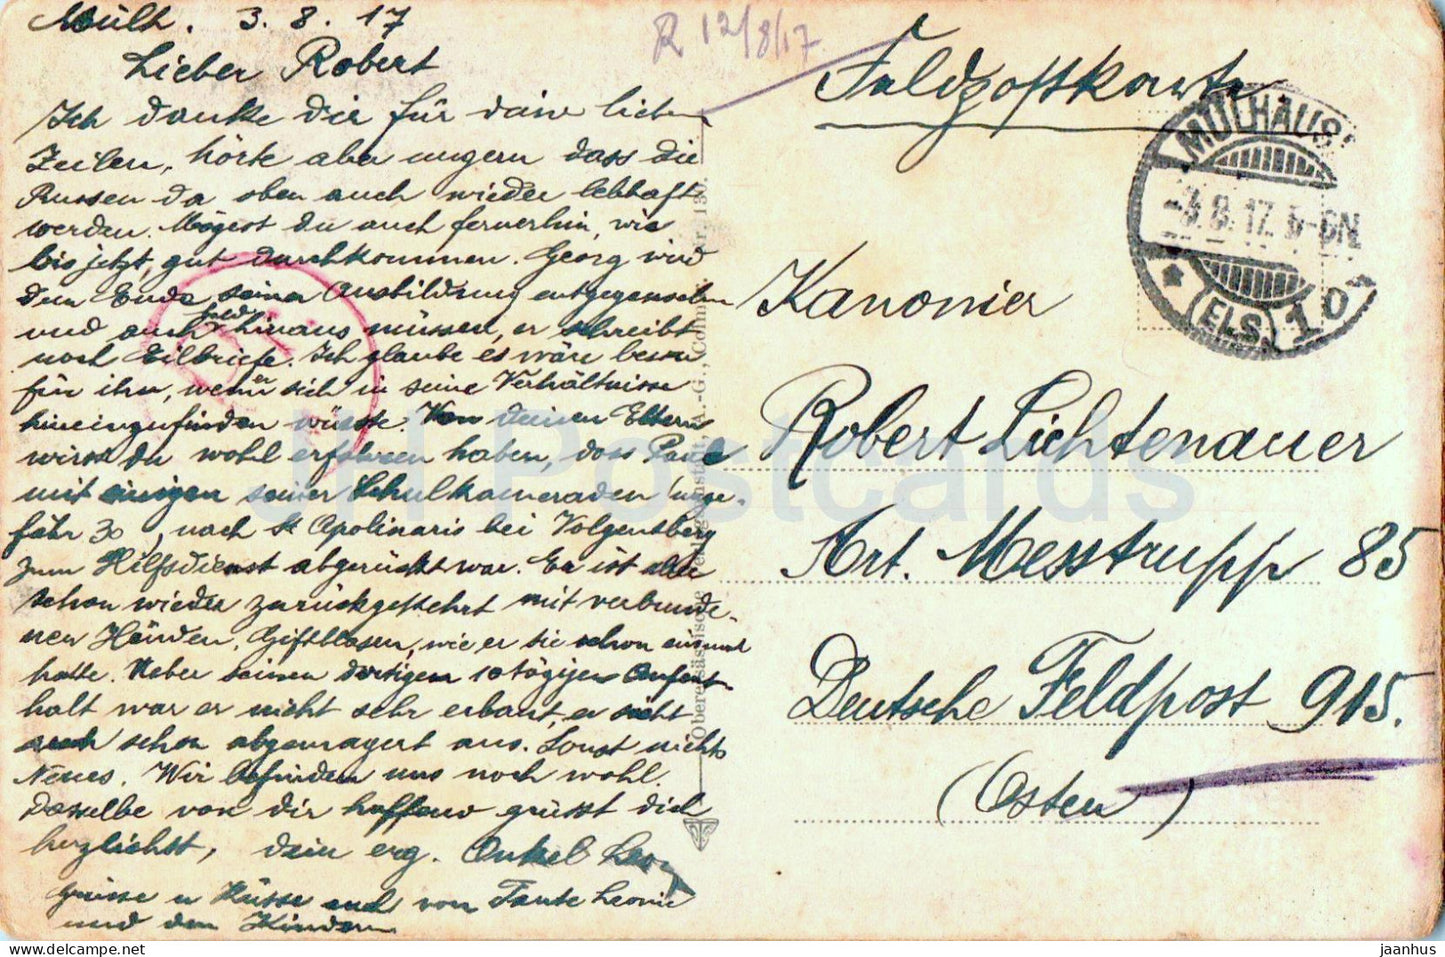 Schnierlach mit Buchenkopf - Feldpost - military mail - old postcard - 1917 - France - used